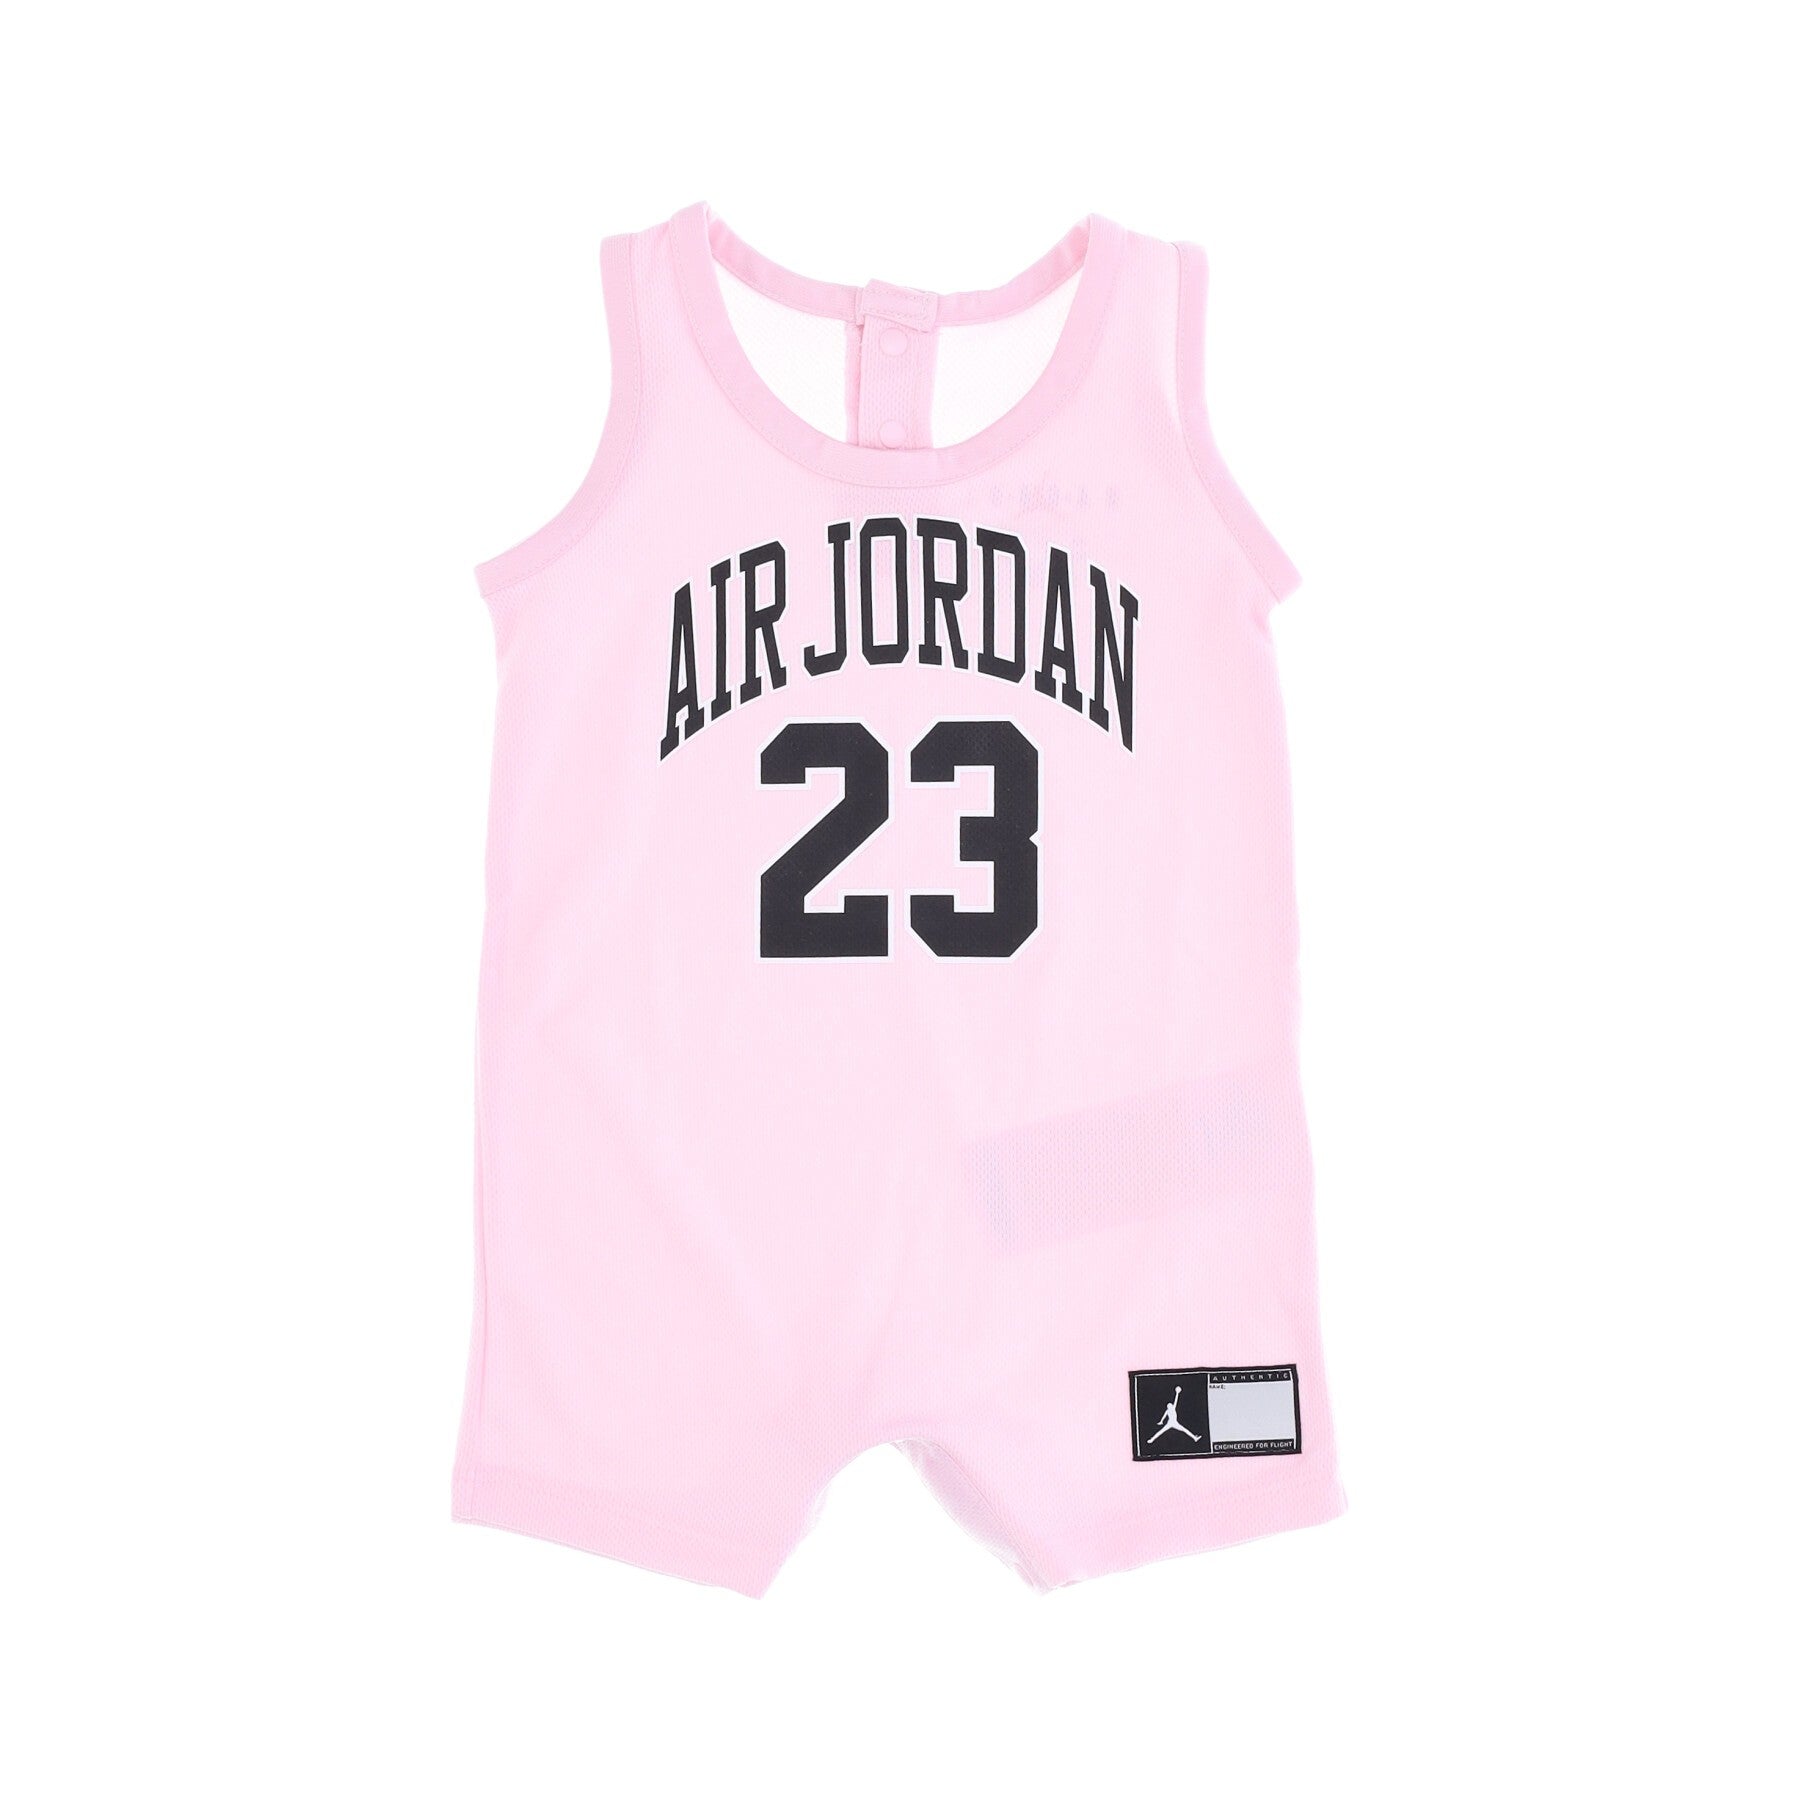 Baby Bodysuit Hbr Jordan Jersey Romper Pink Foam